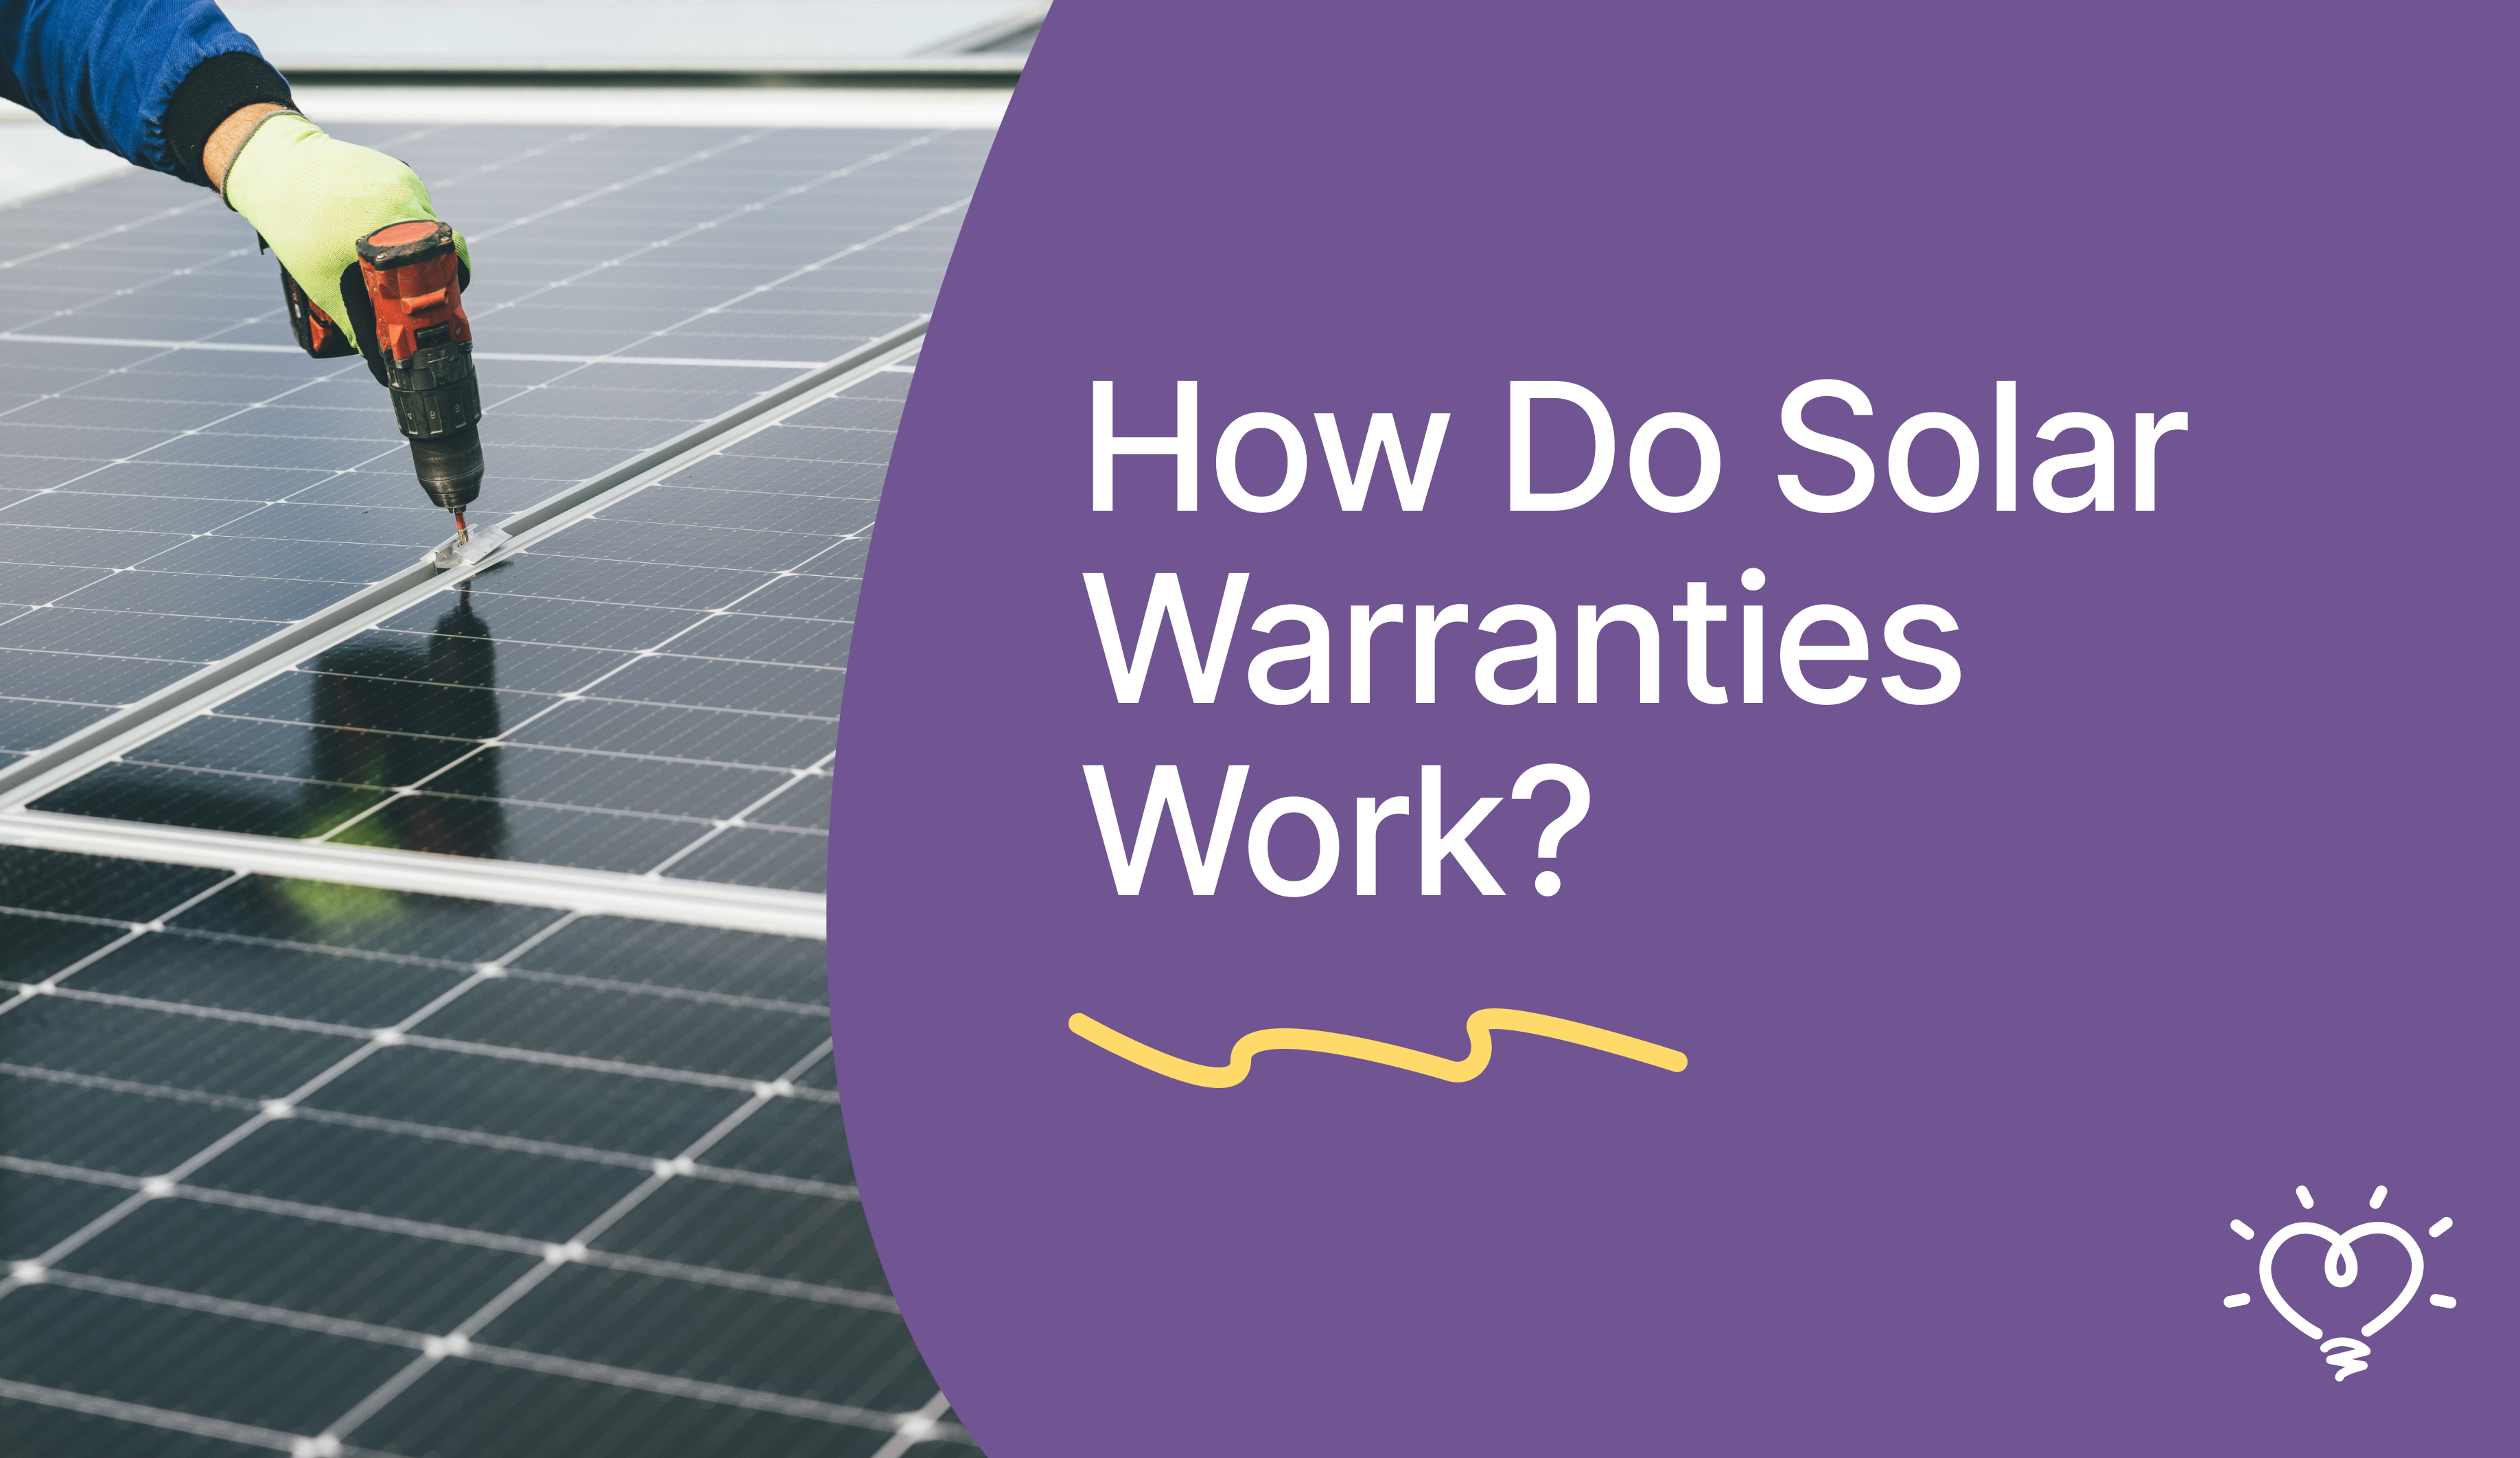 How Do Solar Warranties Work?